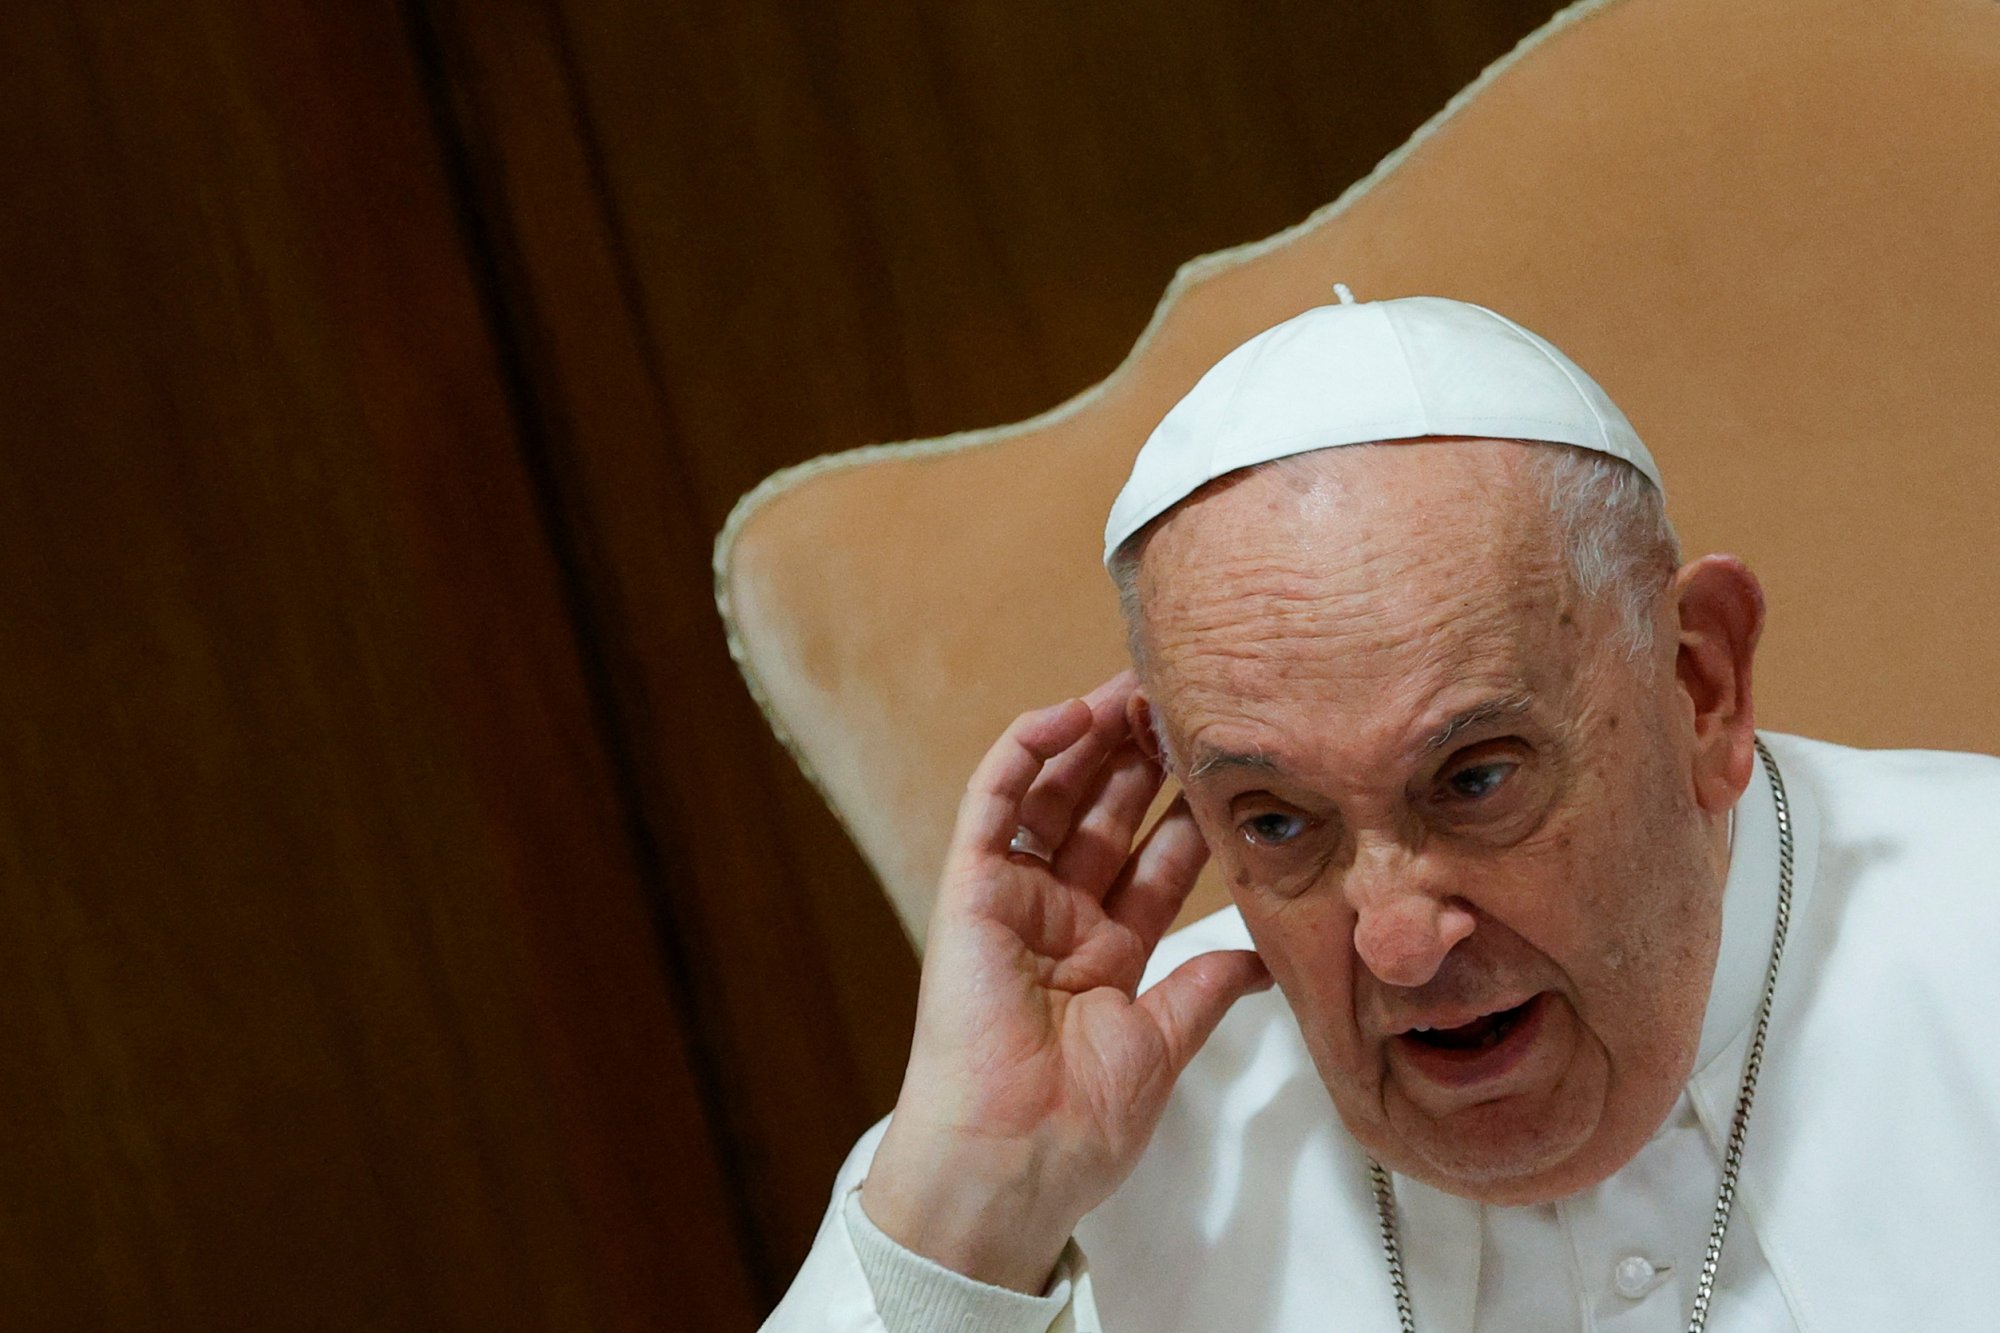 Βατικανό: Και η Αγία Έδρα φοβέρα θέλει – Εργαζόμενοι προσφεύγουν καταγγέλλοντας εργασιακό μεσαίωνα